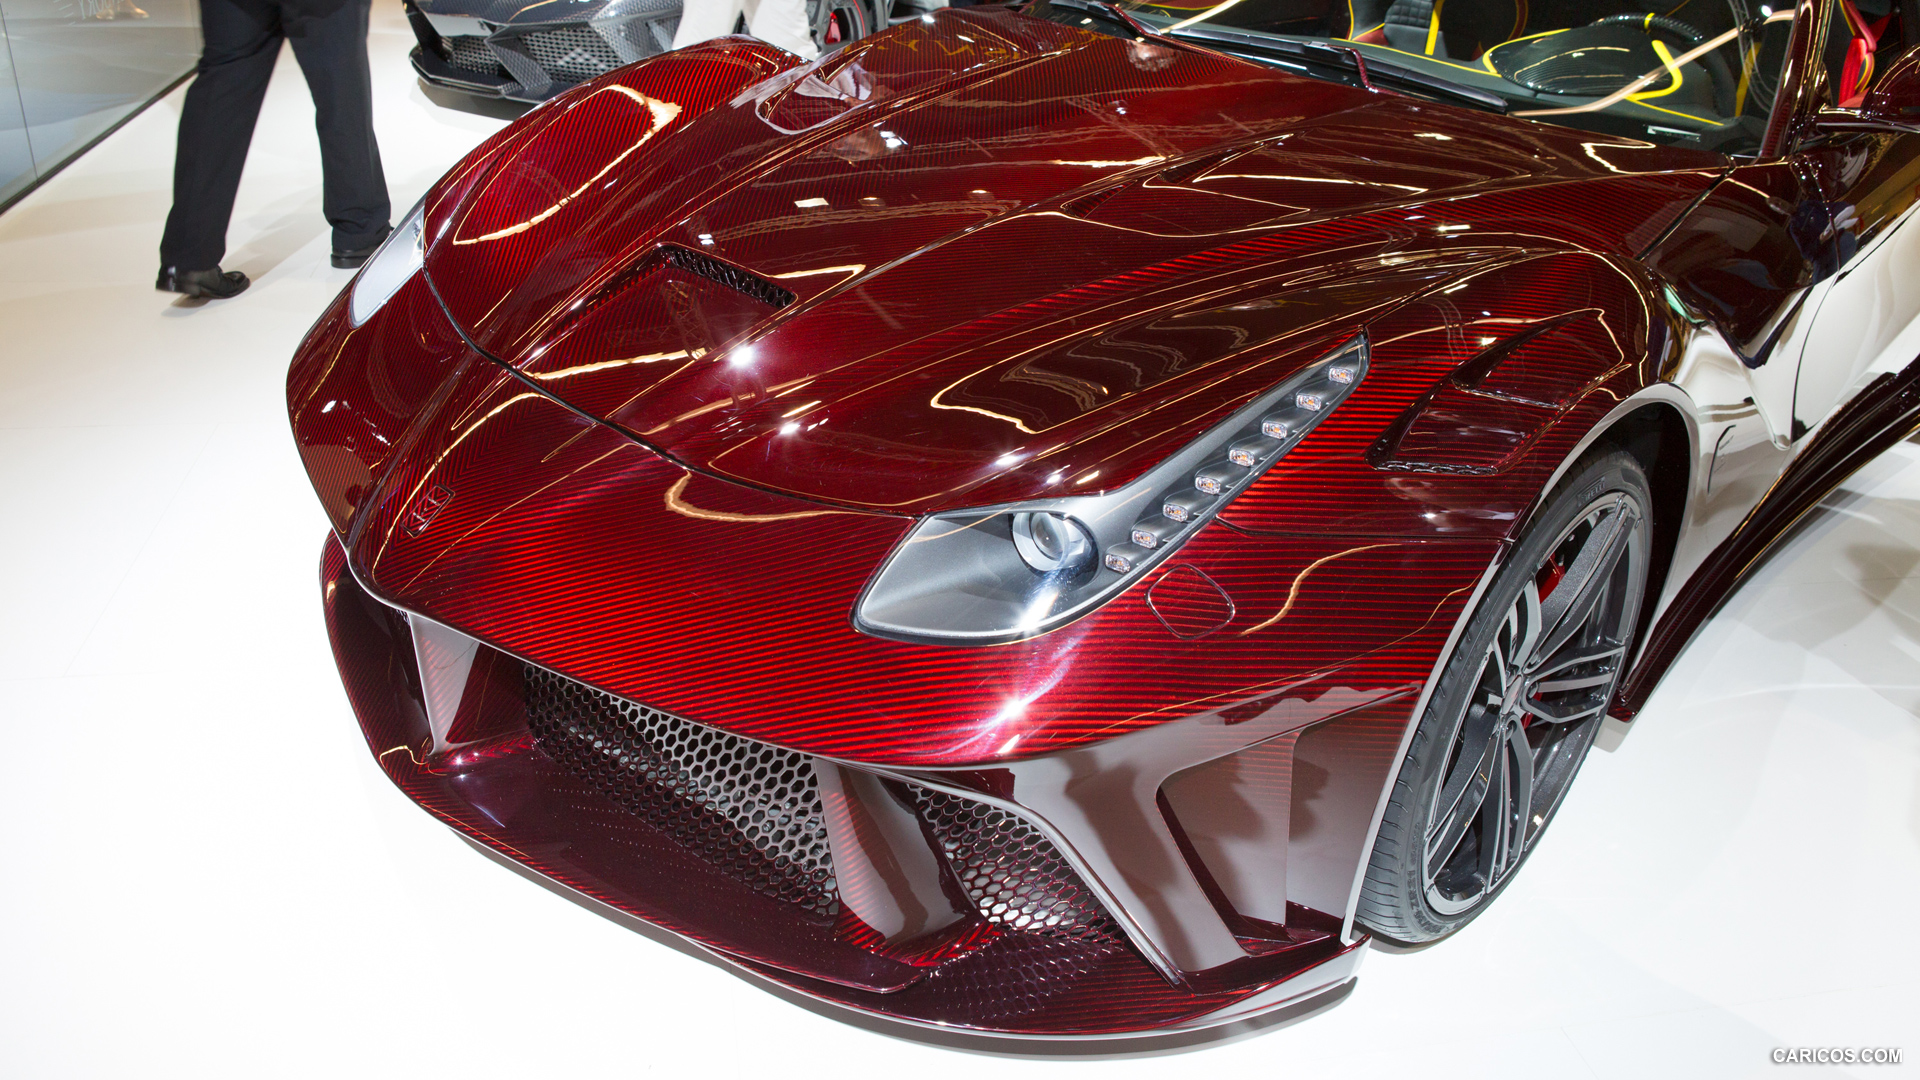 2013 Mansory La Revoluzione based on Ferrari F12berlinetta  - Front, #3 of 6